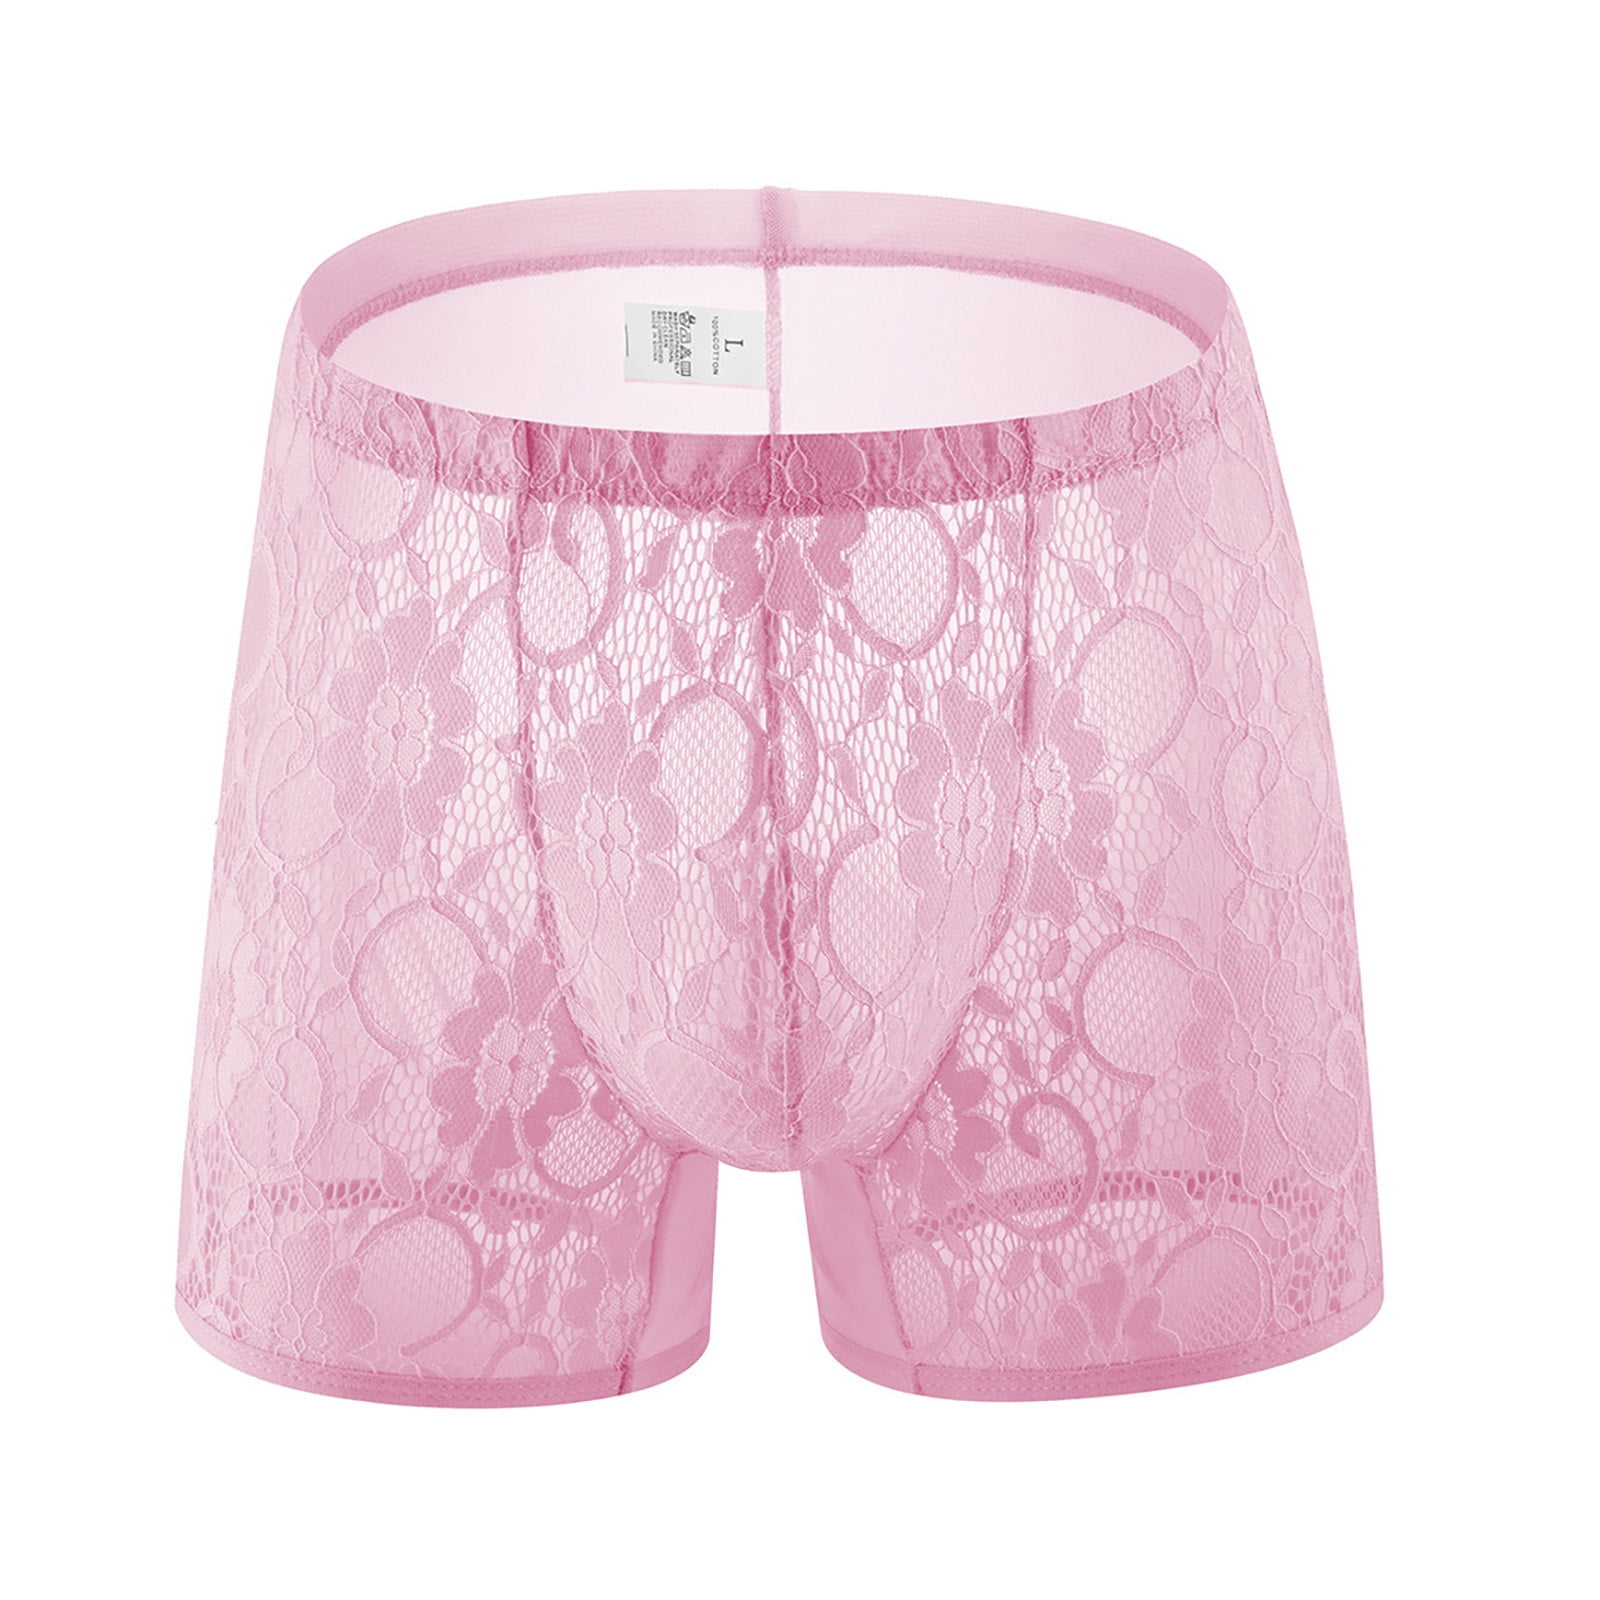 CLZOUD Underwear Boxer Briefs Pink Men's Lace Thong Sex Panties Panties  Transparent Men's T Pants Underwear Briefs Xl